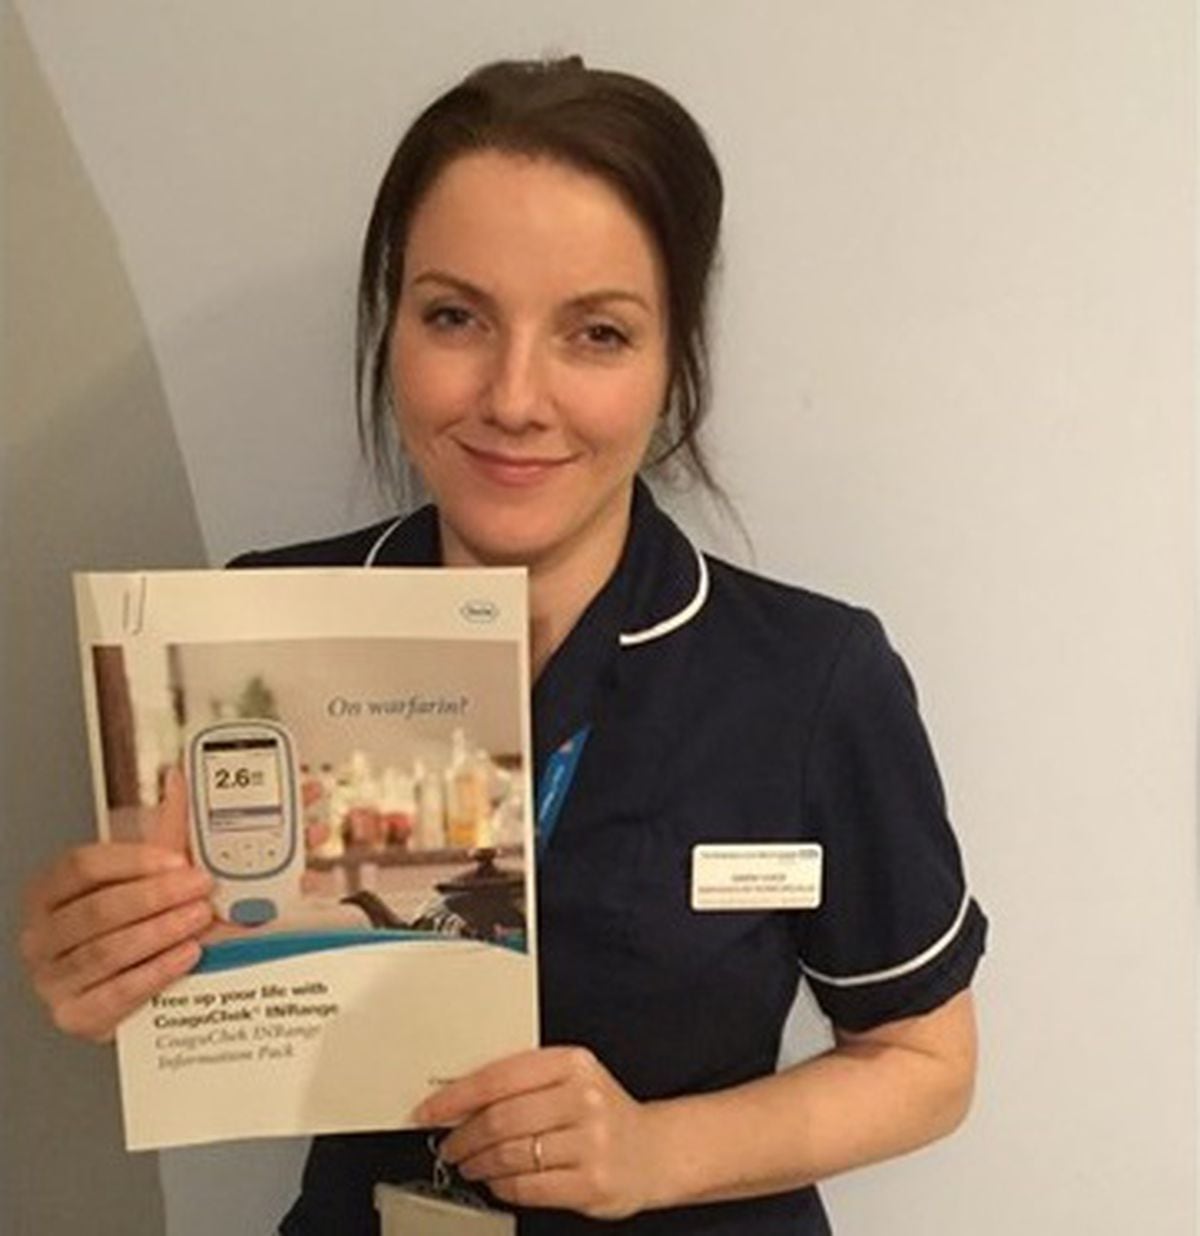 Nurse Sarah is in the running to help sick children Shropshire Star